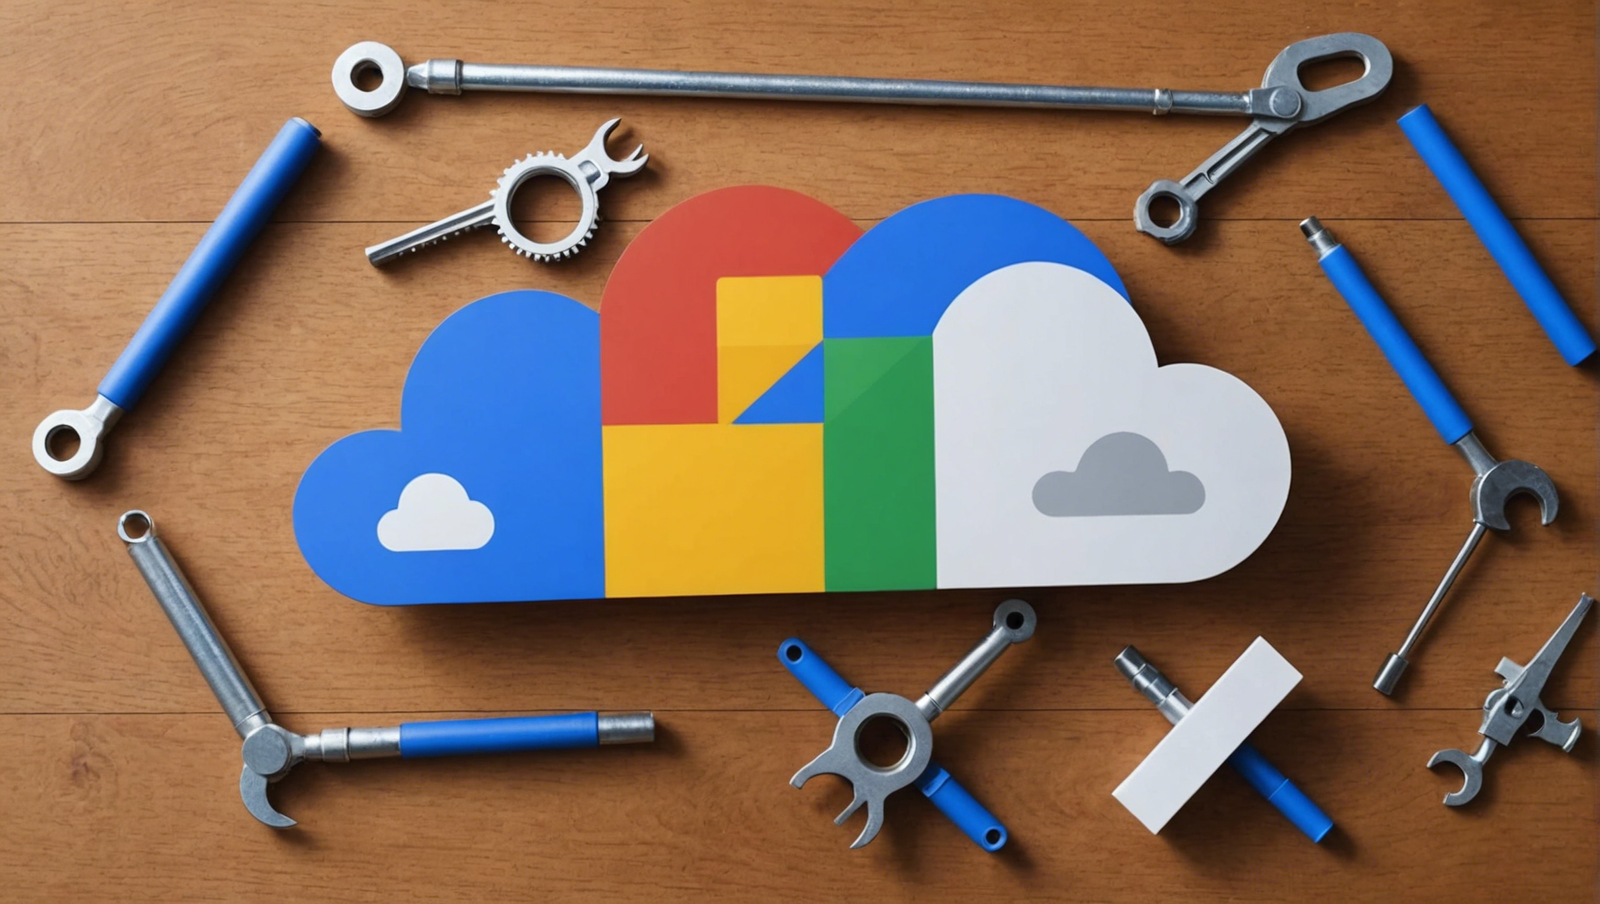 découvrez les trois nouveaux outils ia révolutionnaires dévoilés par google cloud next ! quels sont-ils et comment vont-ils transformer votre entreprise ? obtenez des réponses ici.